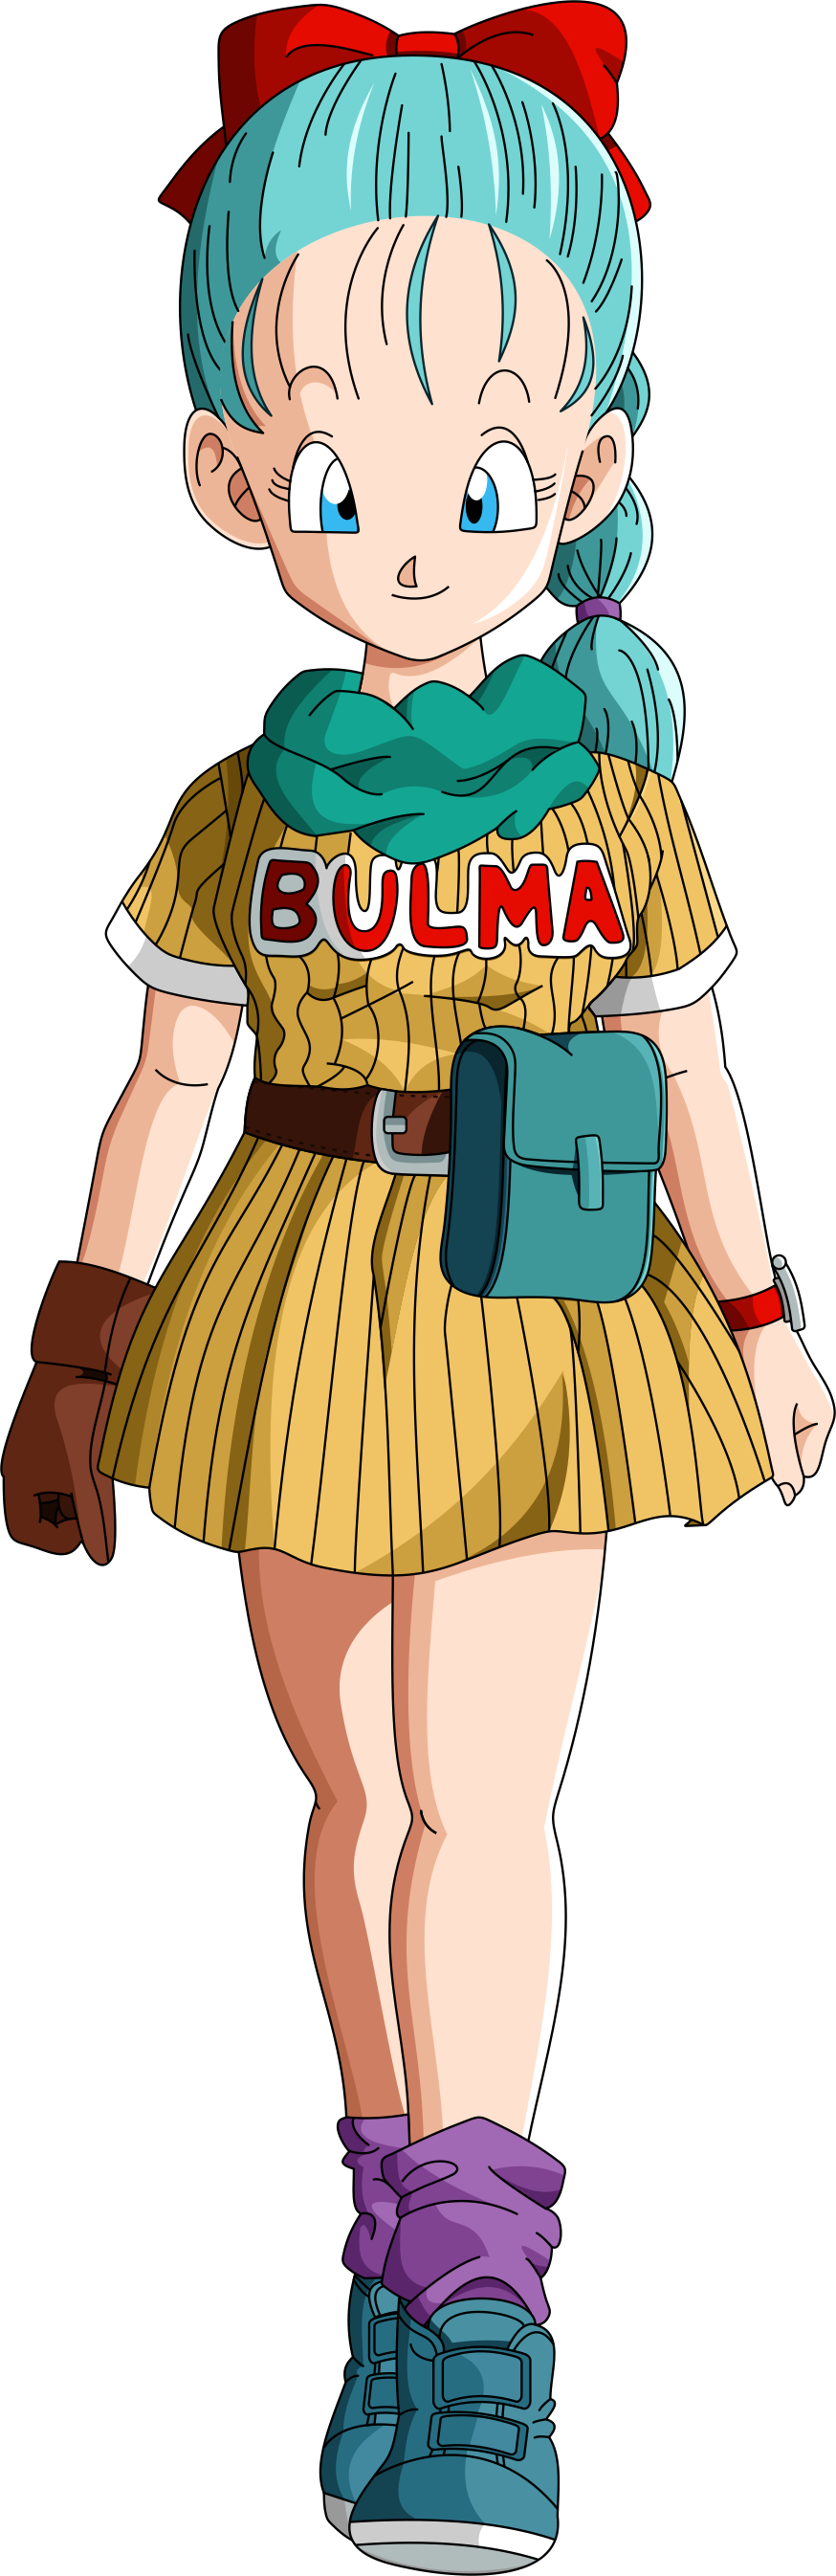 Imagen - Bulma en Dragon Ball.png | Dragon Ball Wiki ...